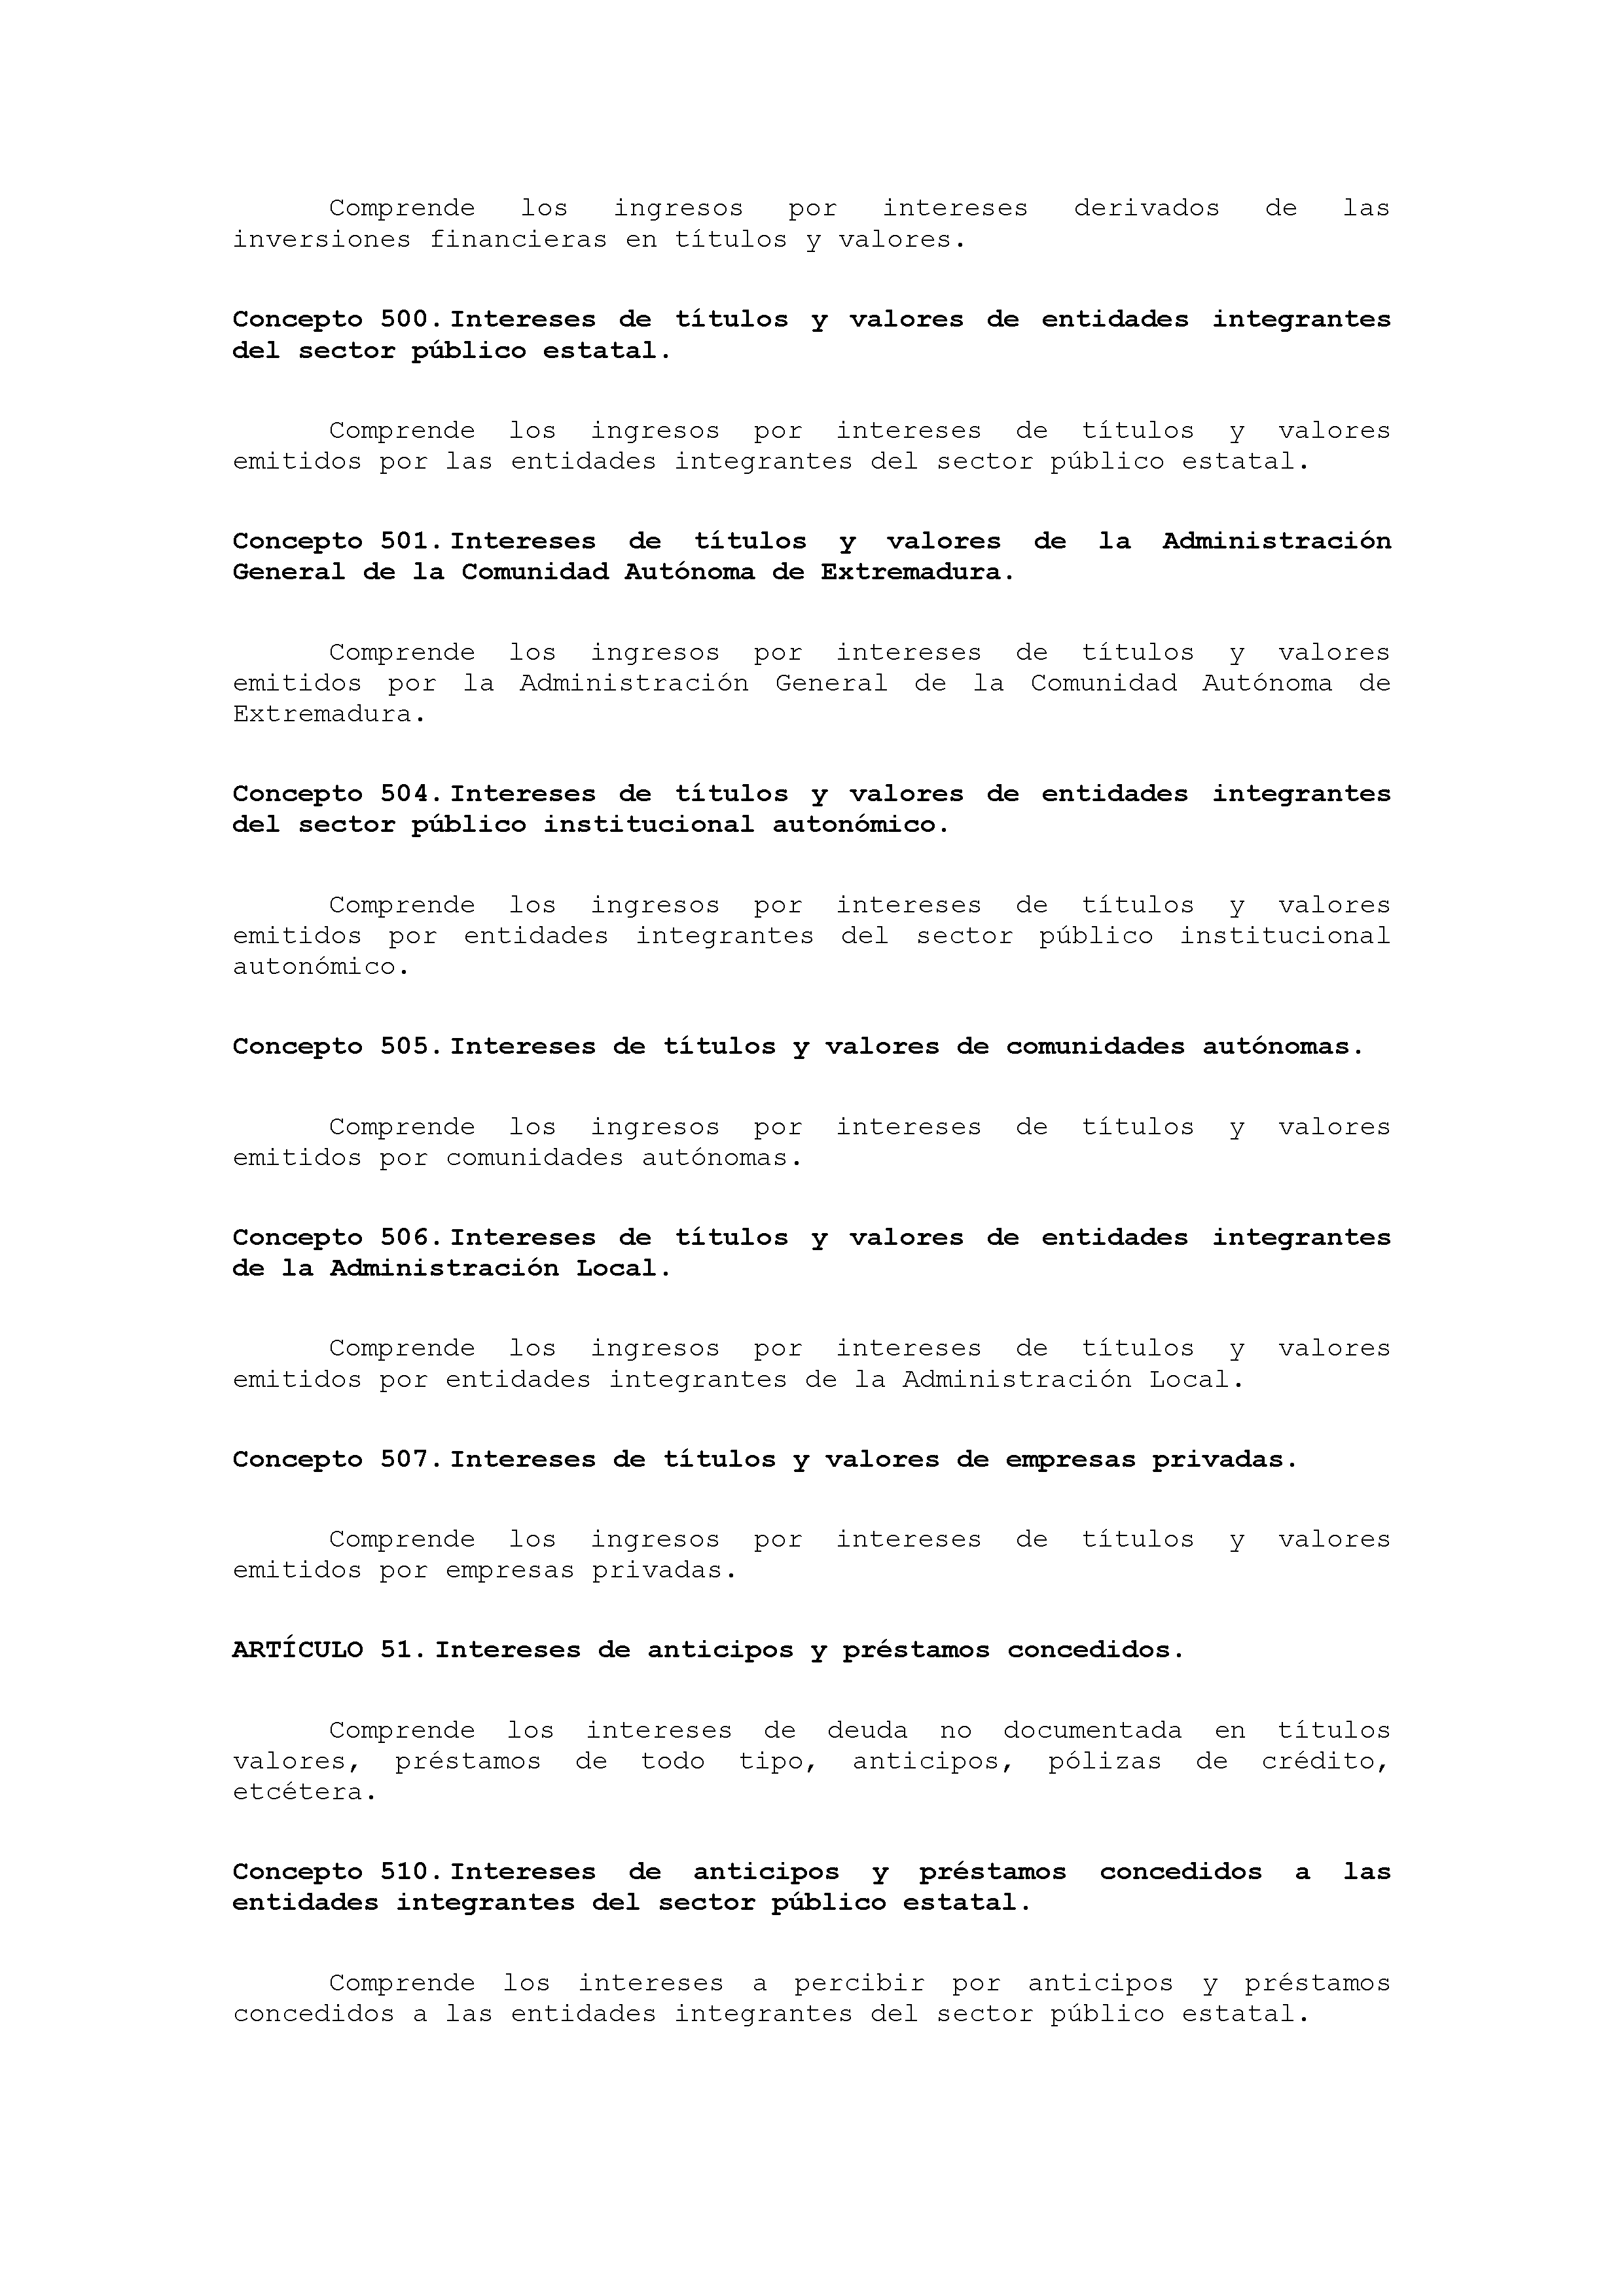 ANEXO VIII CÓDIGO DE LA CLASIFICACIÓN ECONÓMICA DE LOS INGRESOS PÚBLICOS Pag 15